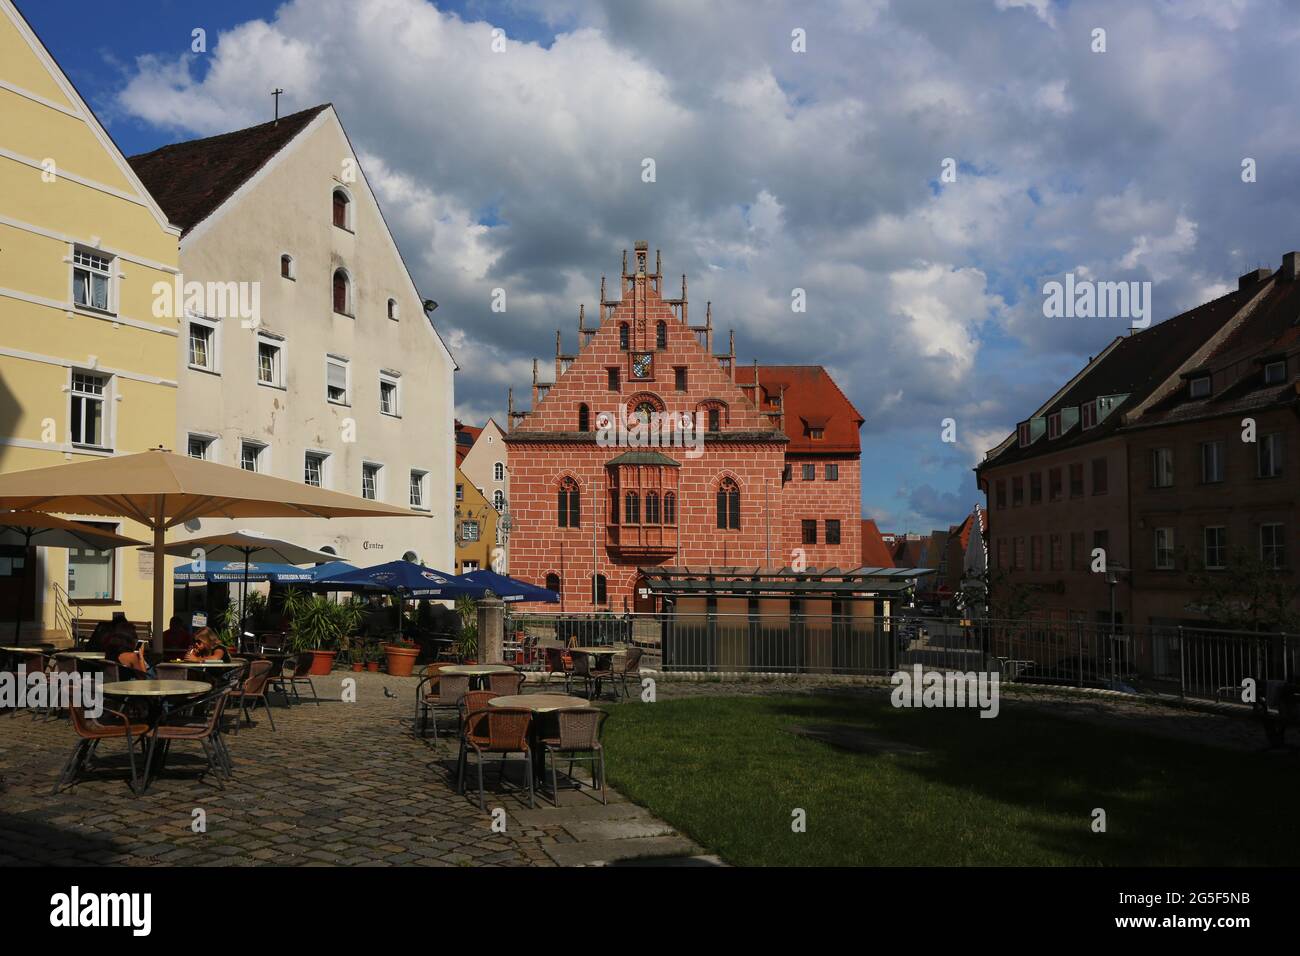 historisches Rathaus in Sulzbach Rosenberg, Amberg, Oberpfalz, Bayern! Stock Photo